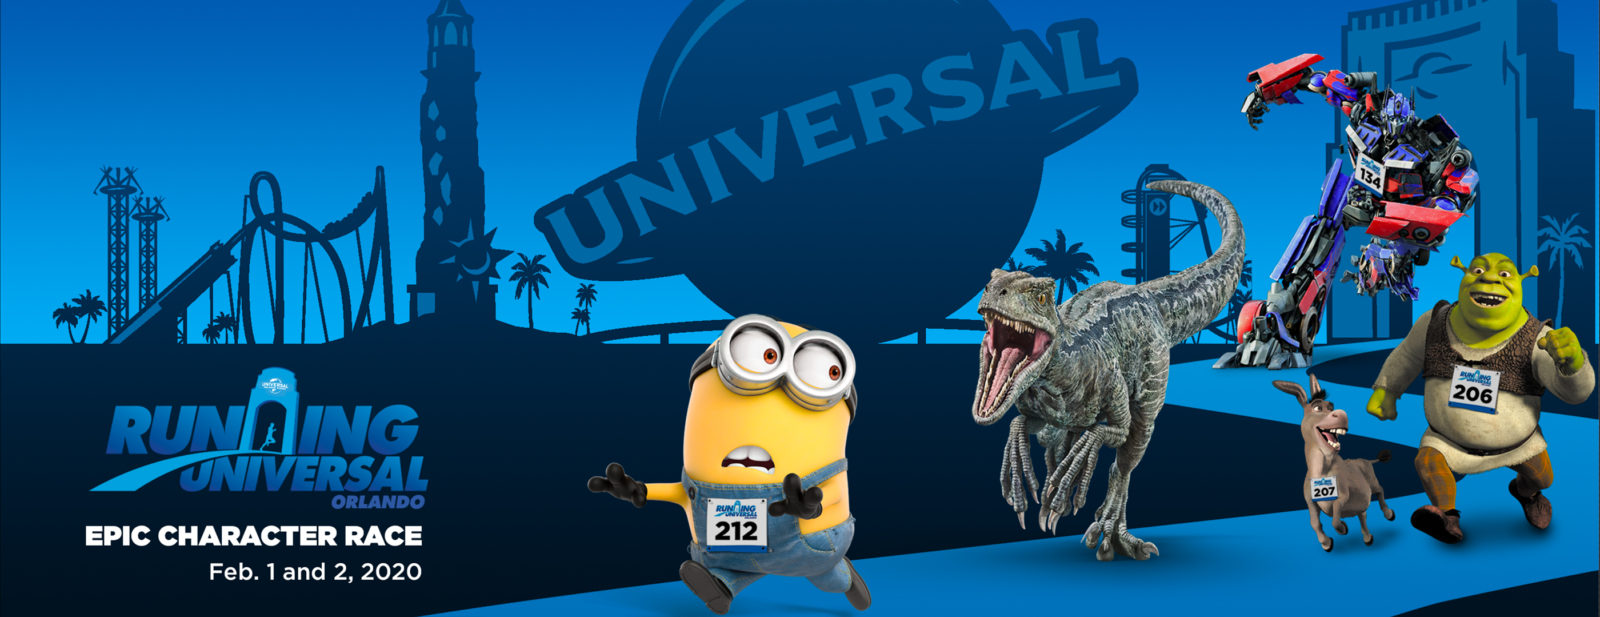 Universal Orlando Epic Character Race 5K 10K Running Universal